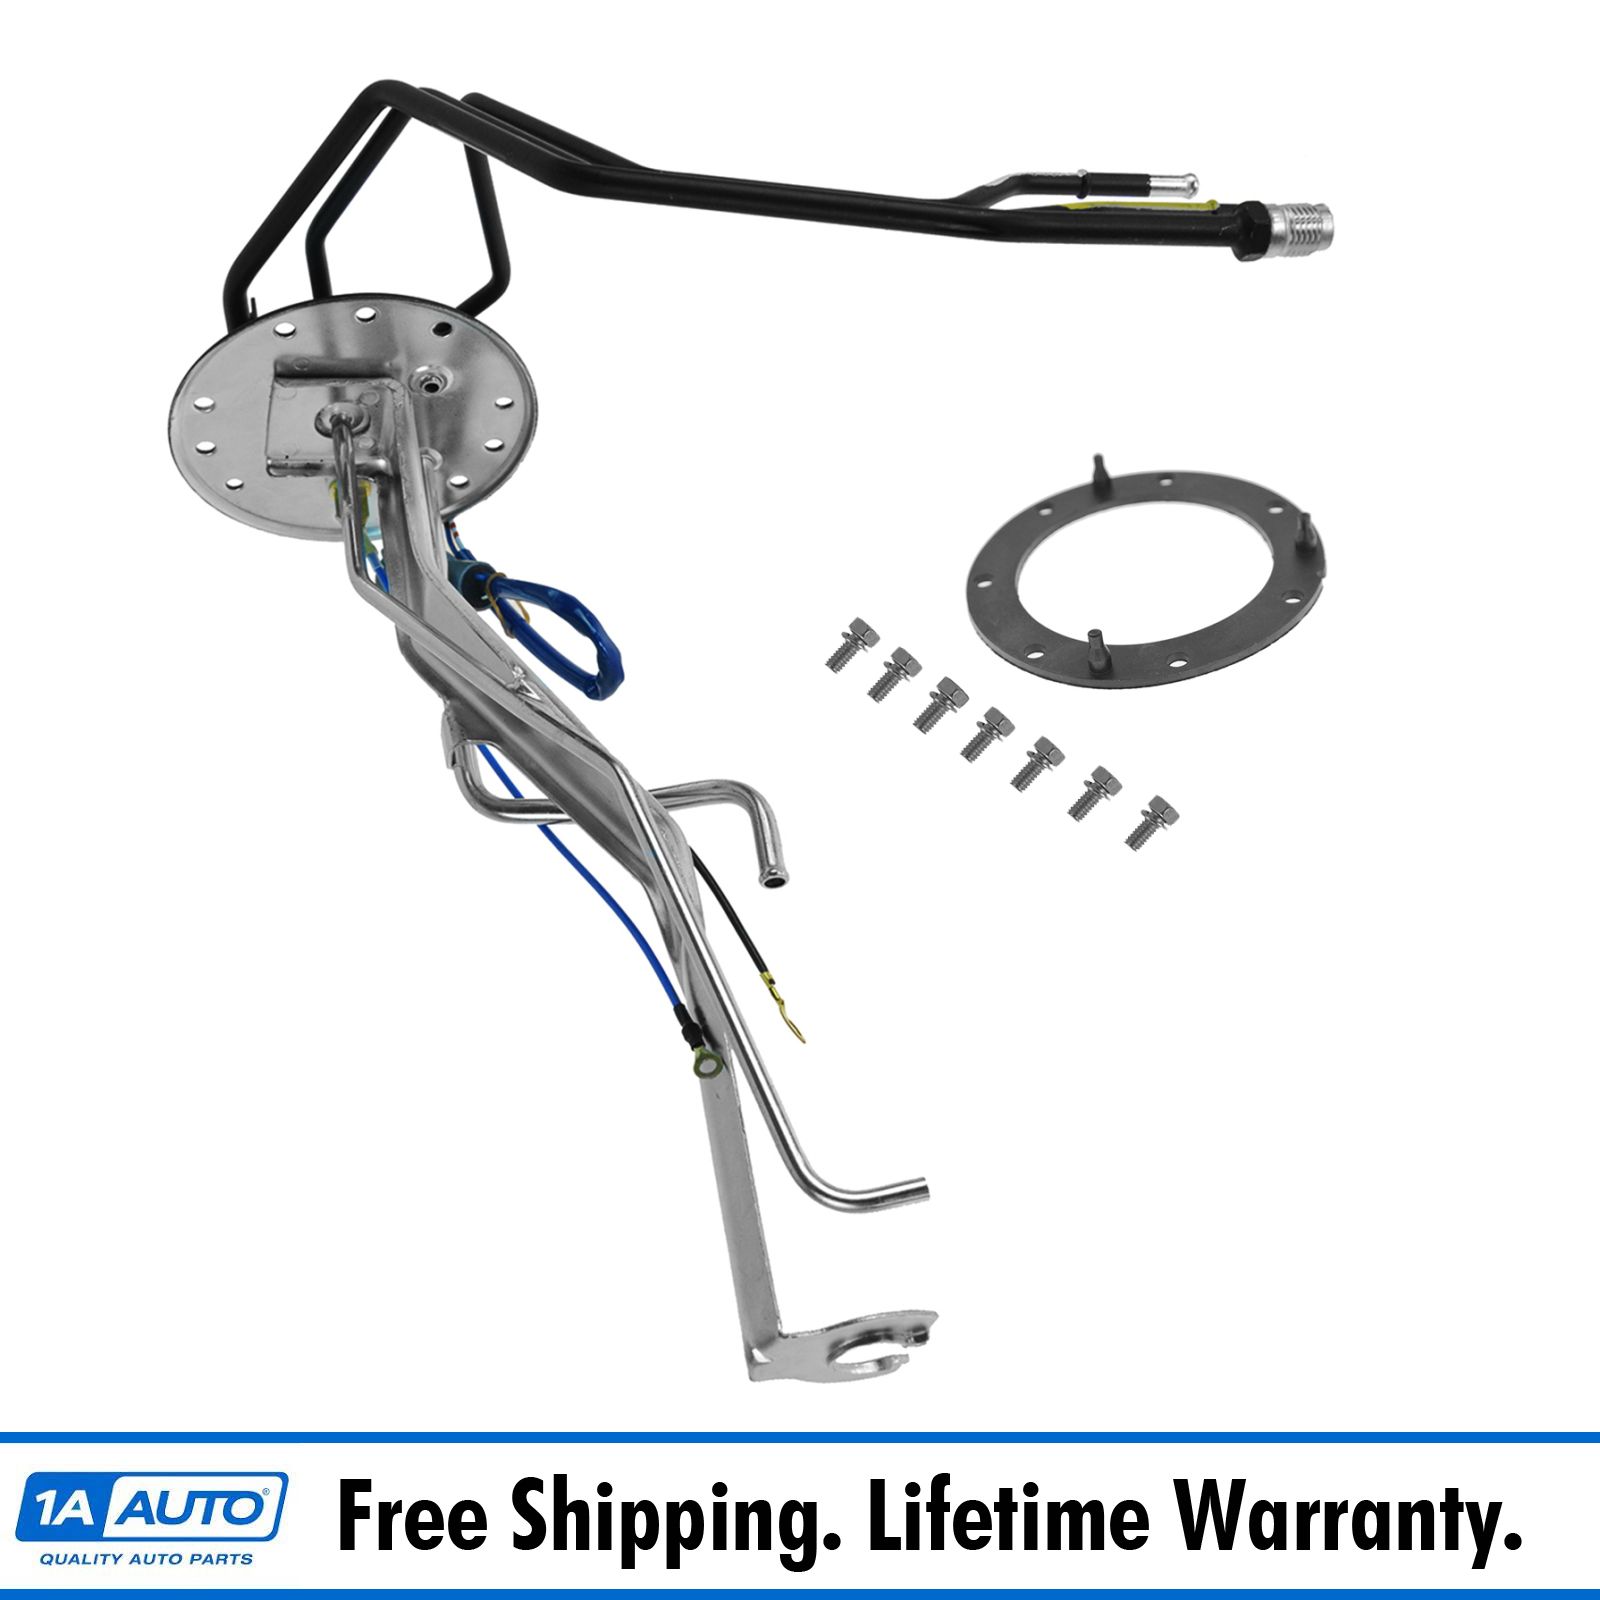 Oem Fuel Pump Hanger Tube Assembly Kit For Toyota Pickup Truck New Ebay